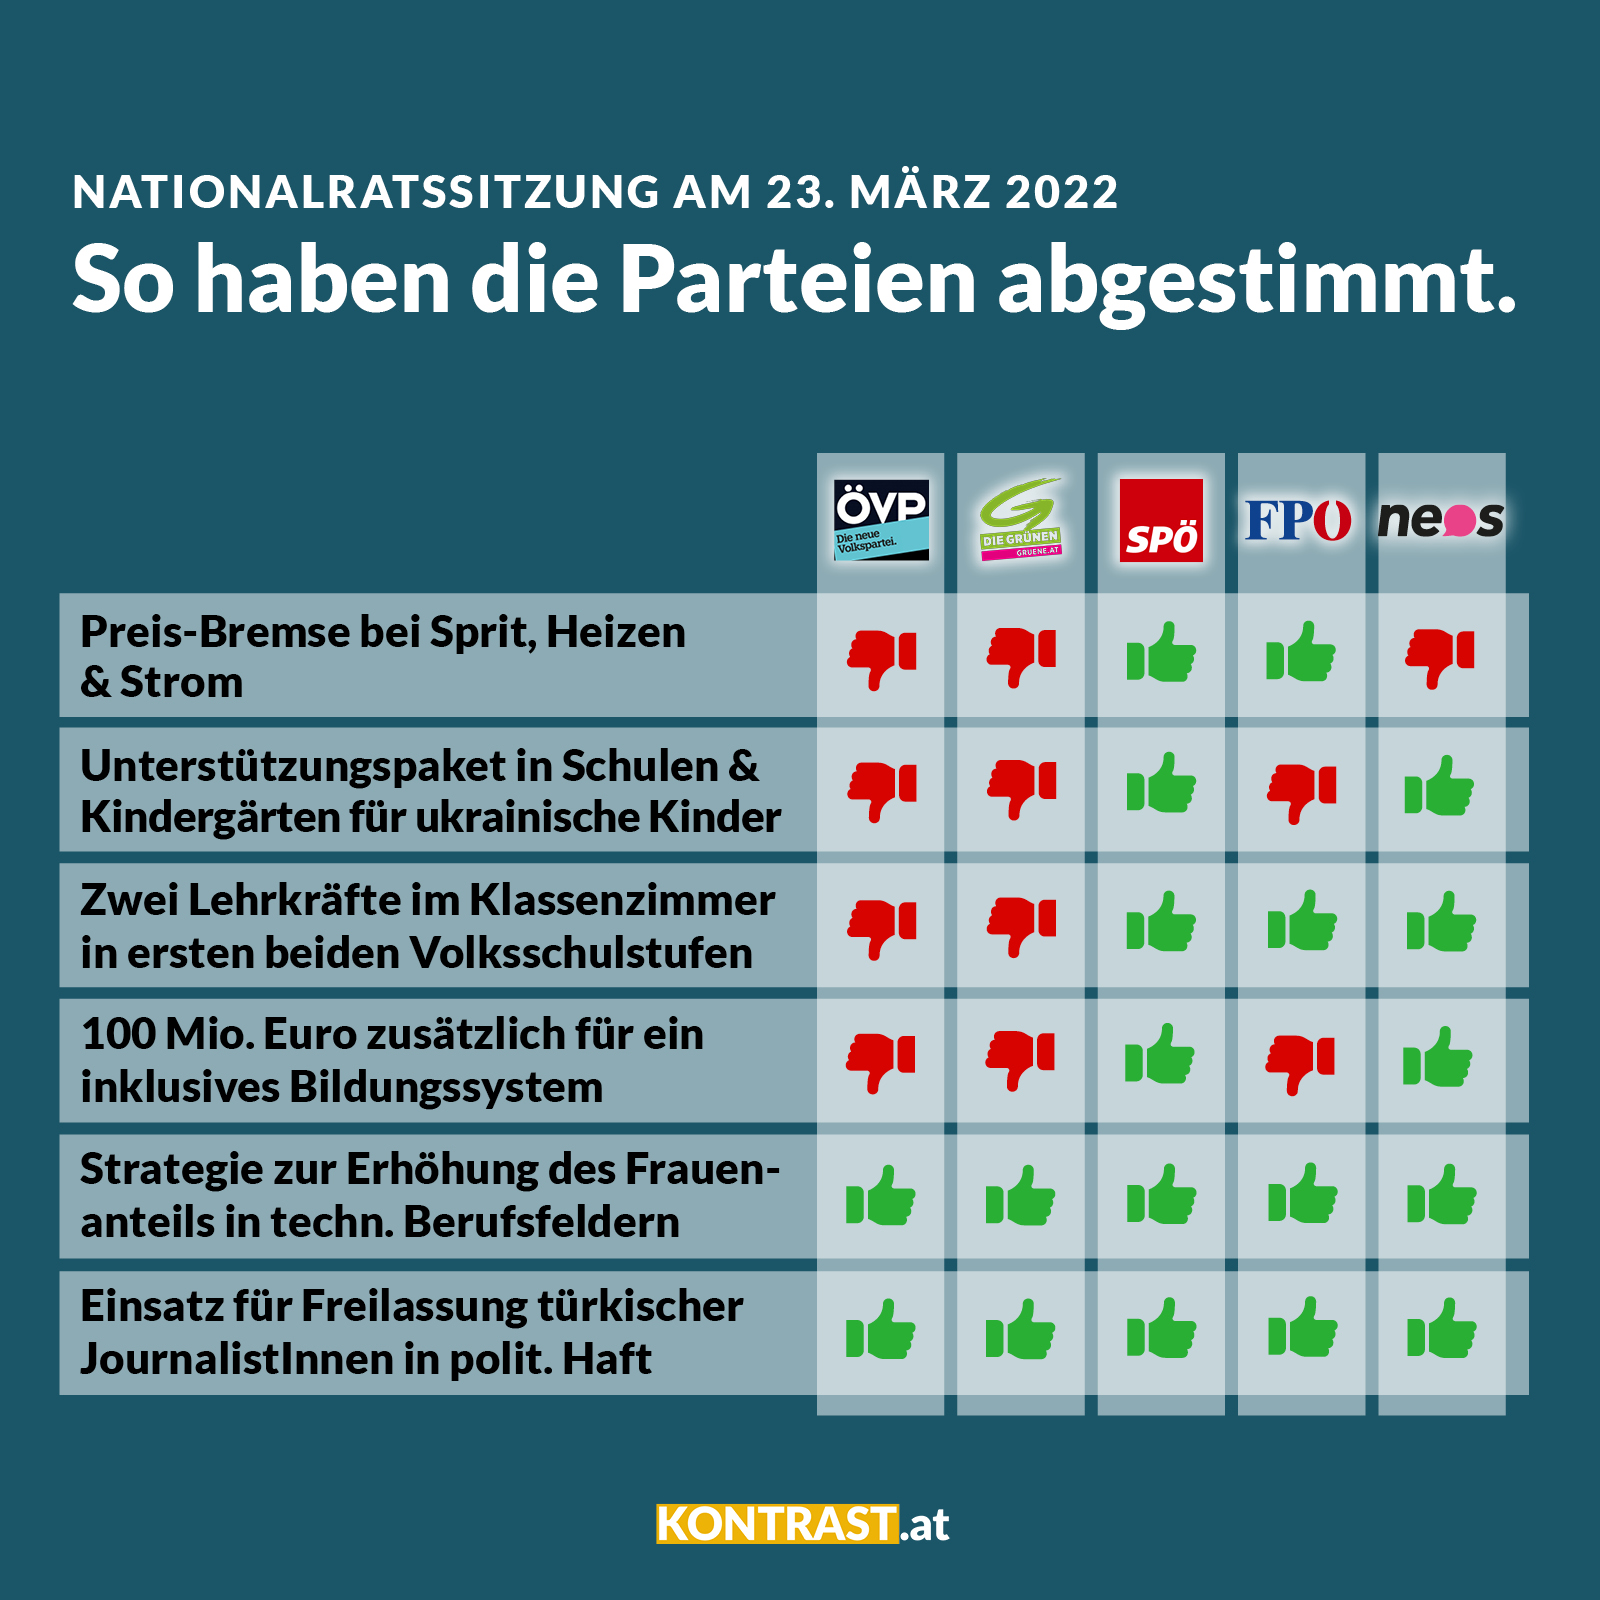 Nationalratssitzung am 23. & 24. März 2022: So haben die Parteien gestimmt